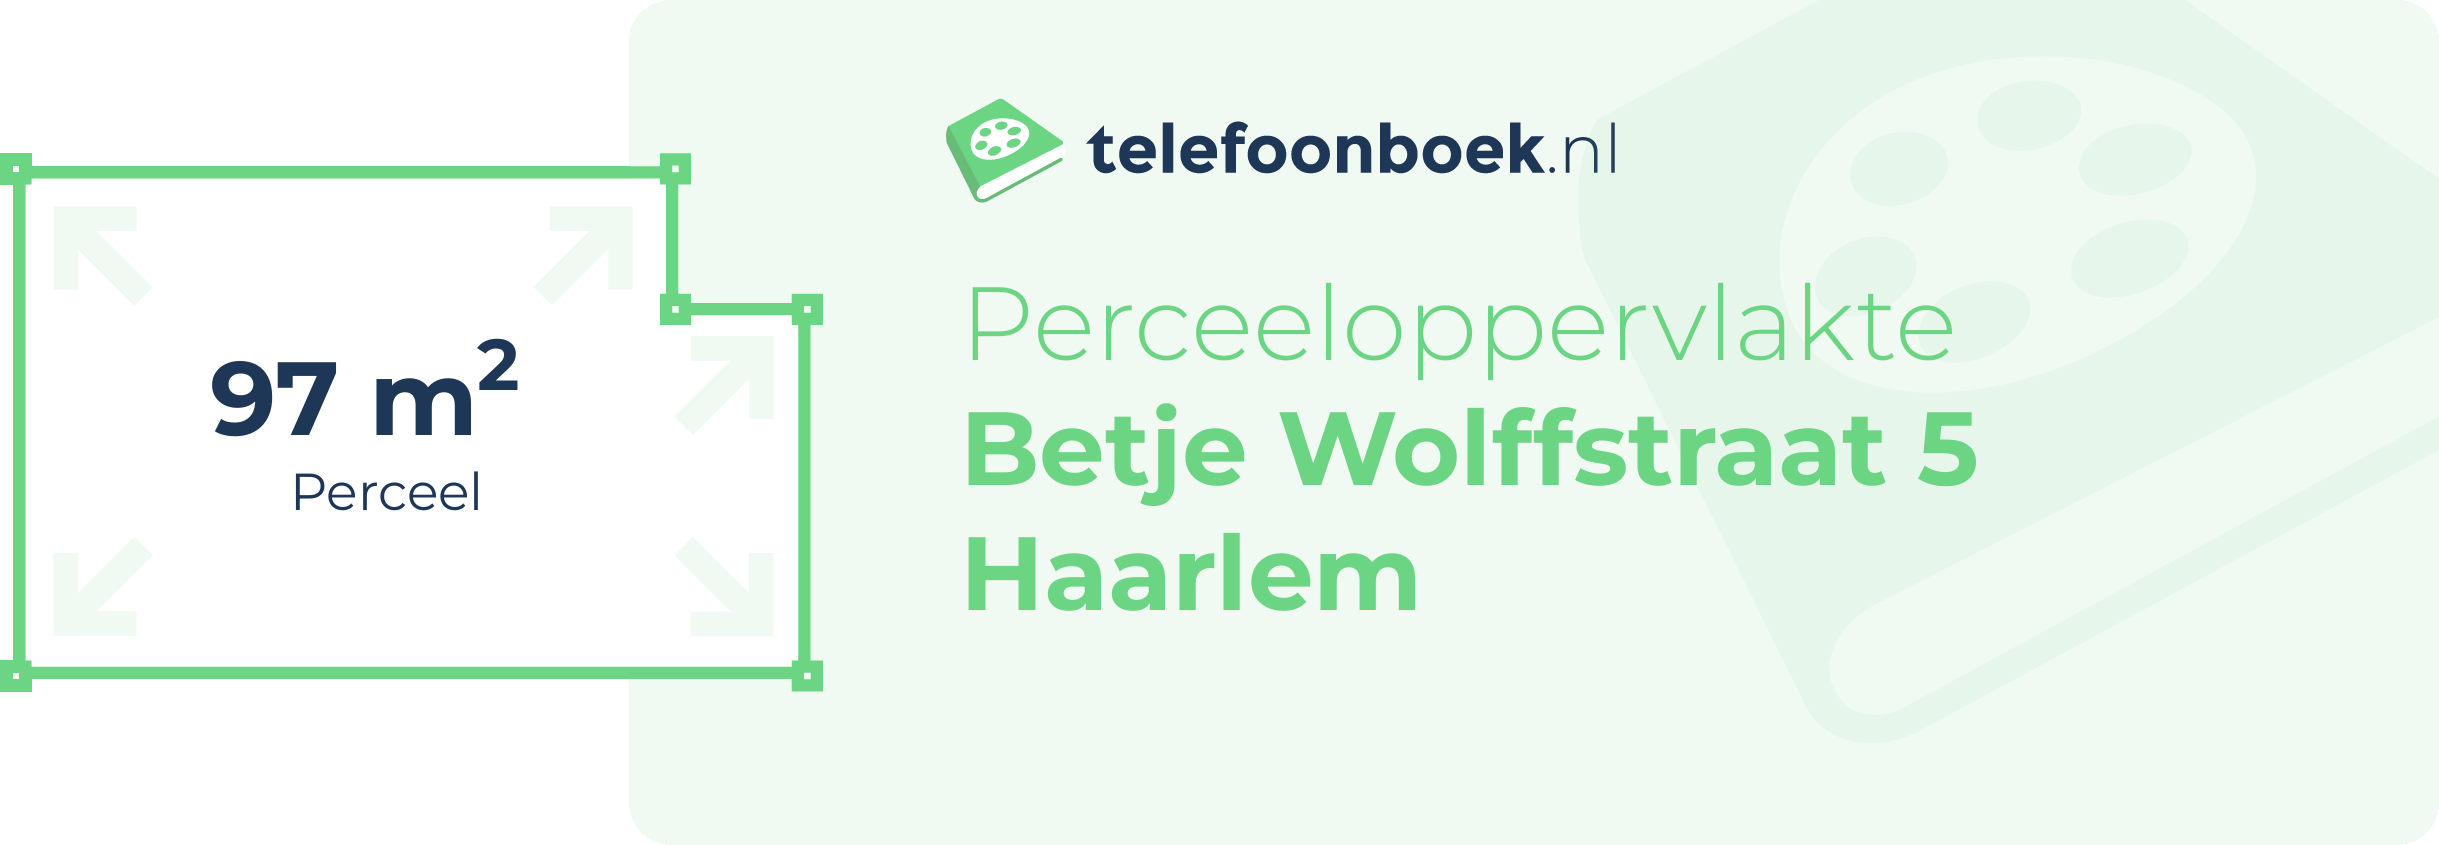 Perceeloppervlakte Betje Wolffstraat 5 Haarlem